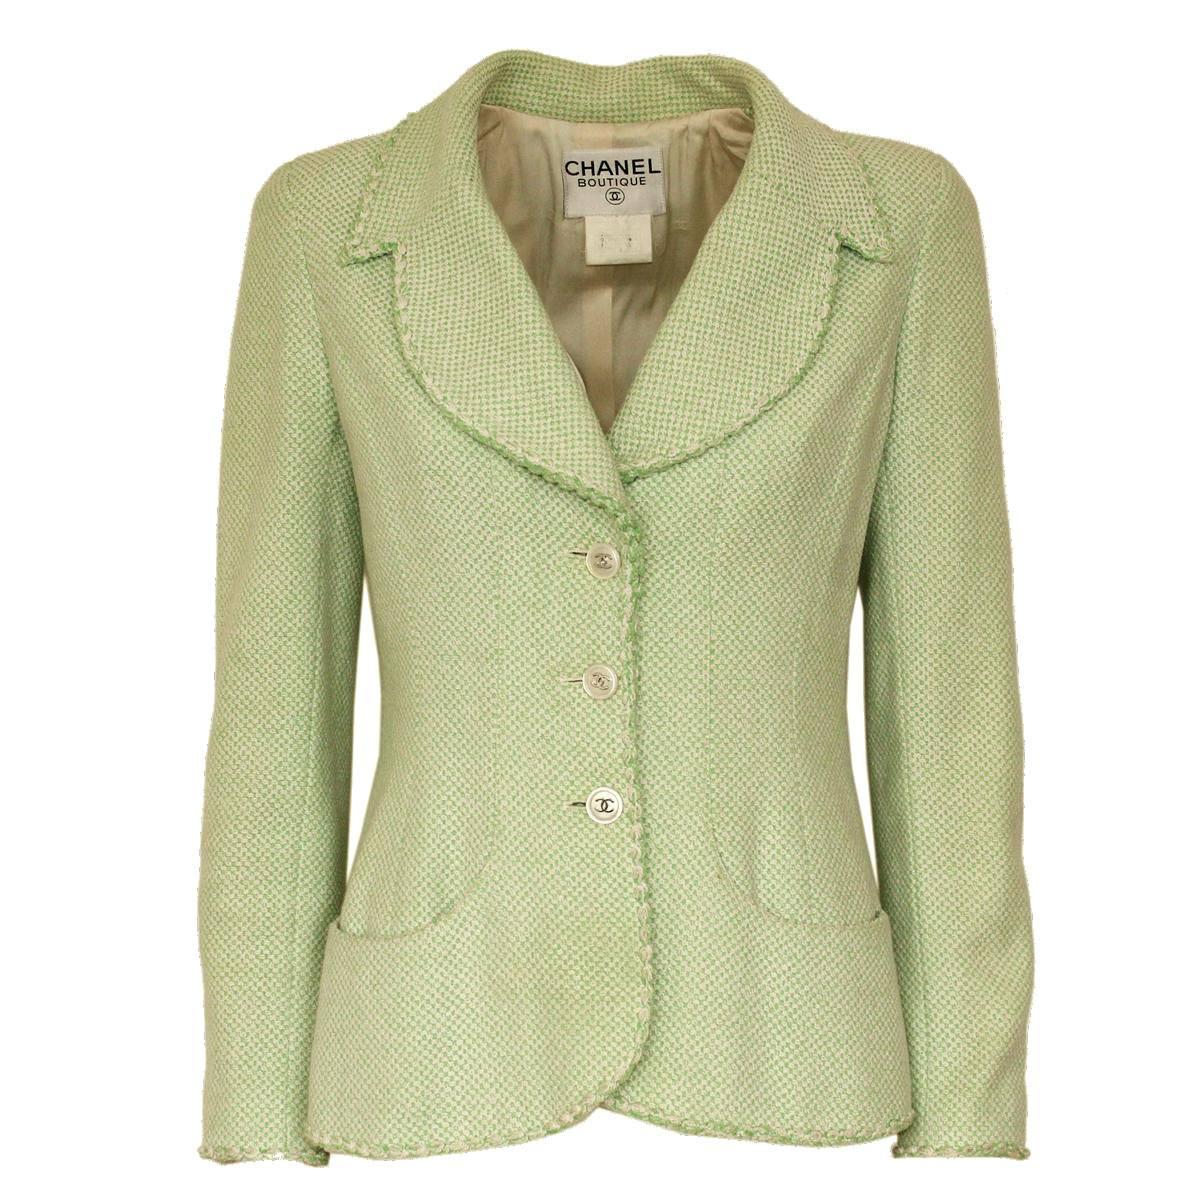 Chanel Wool Blend Green Jacket 38 - 42